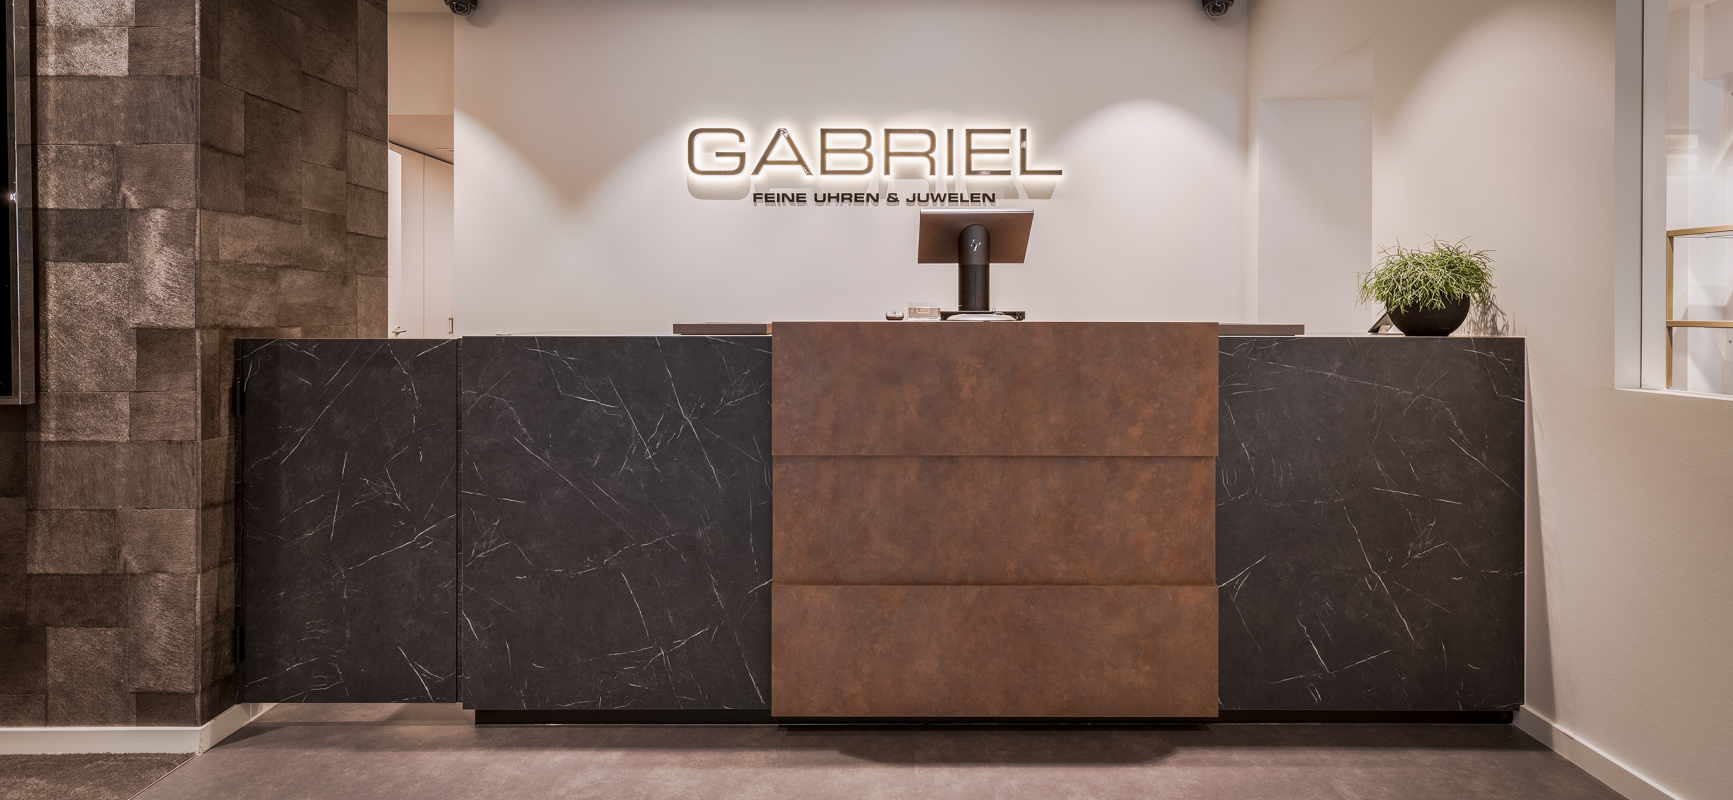 Gabriel – Bijoux | Cologne (DE) - 